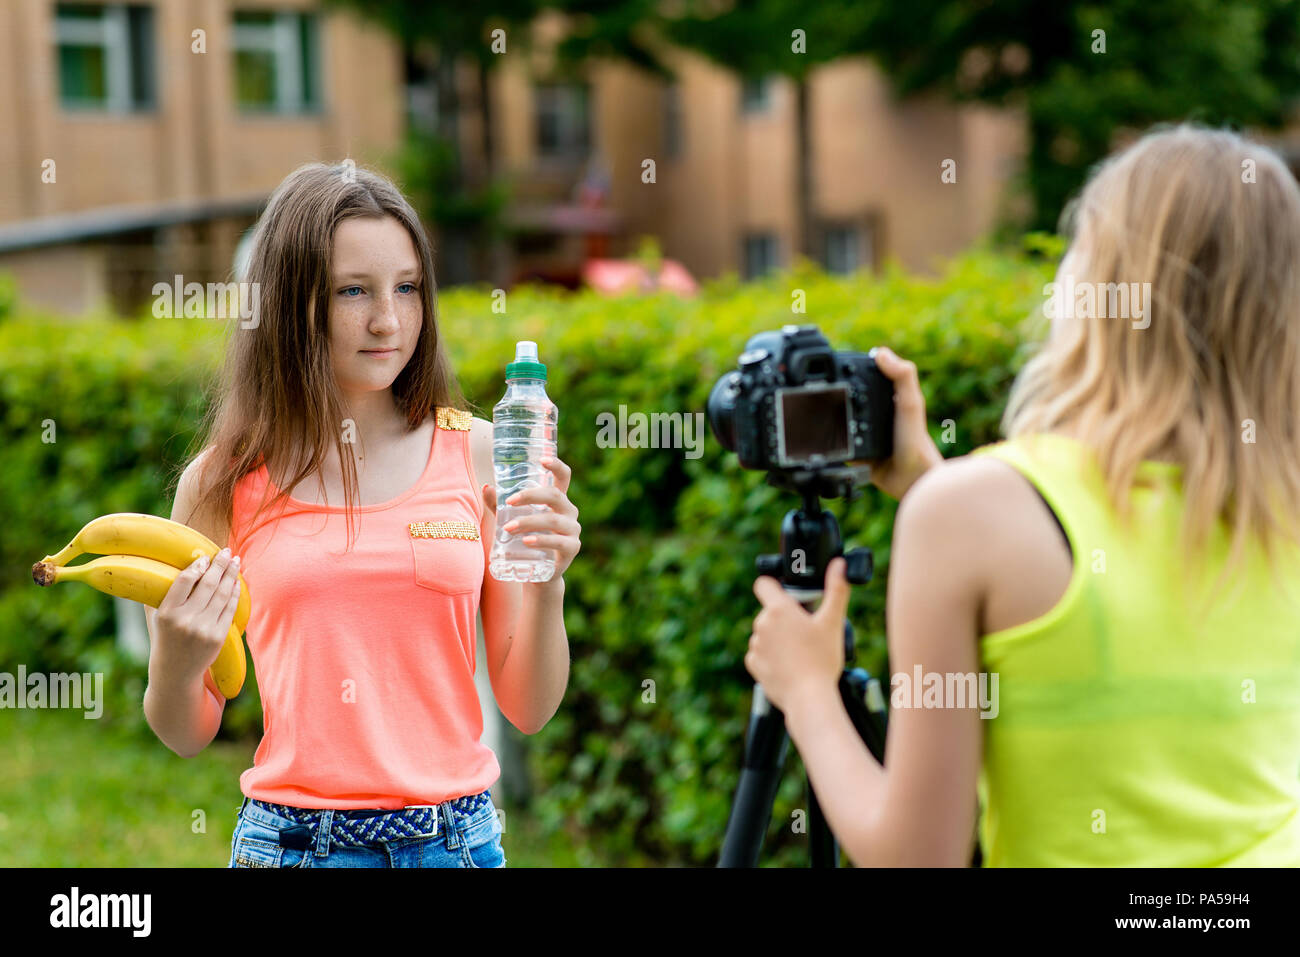 Les jeunes filles des blogueurs, à l'été en ville sur la nature. Enregistrer une vidéo sur l'appareil photo. Dans ses mains tient une bouteille d'eau et deux bananes. Caméra wifi Utilisation Banque D'Images